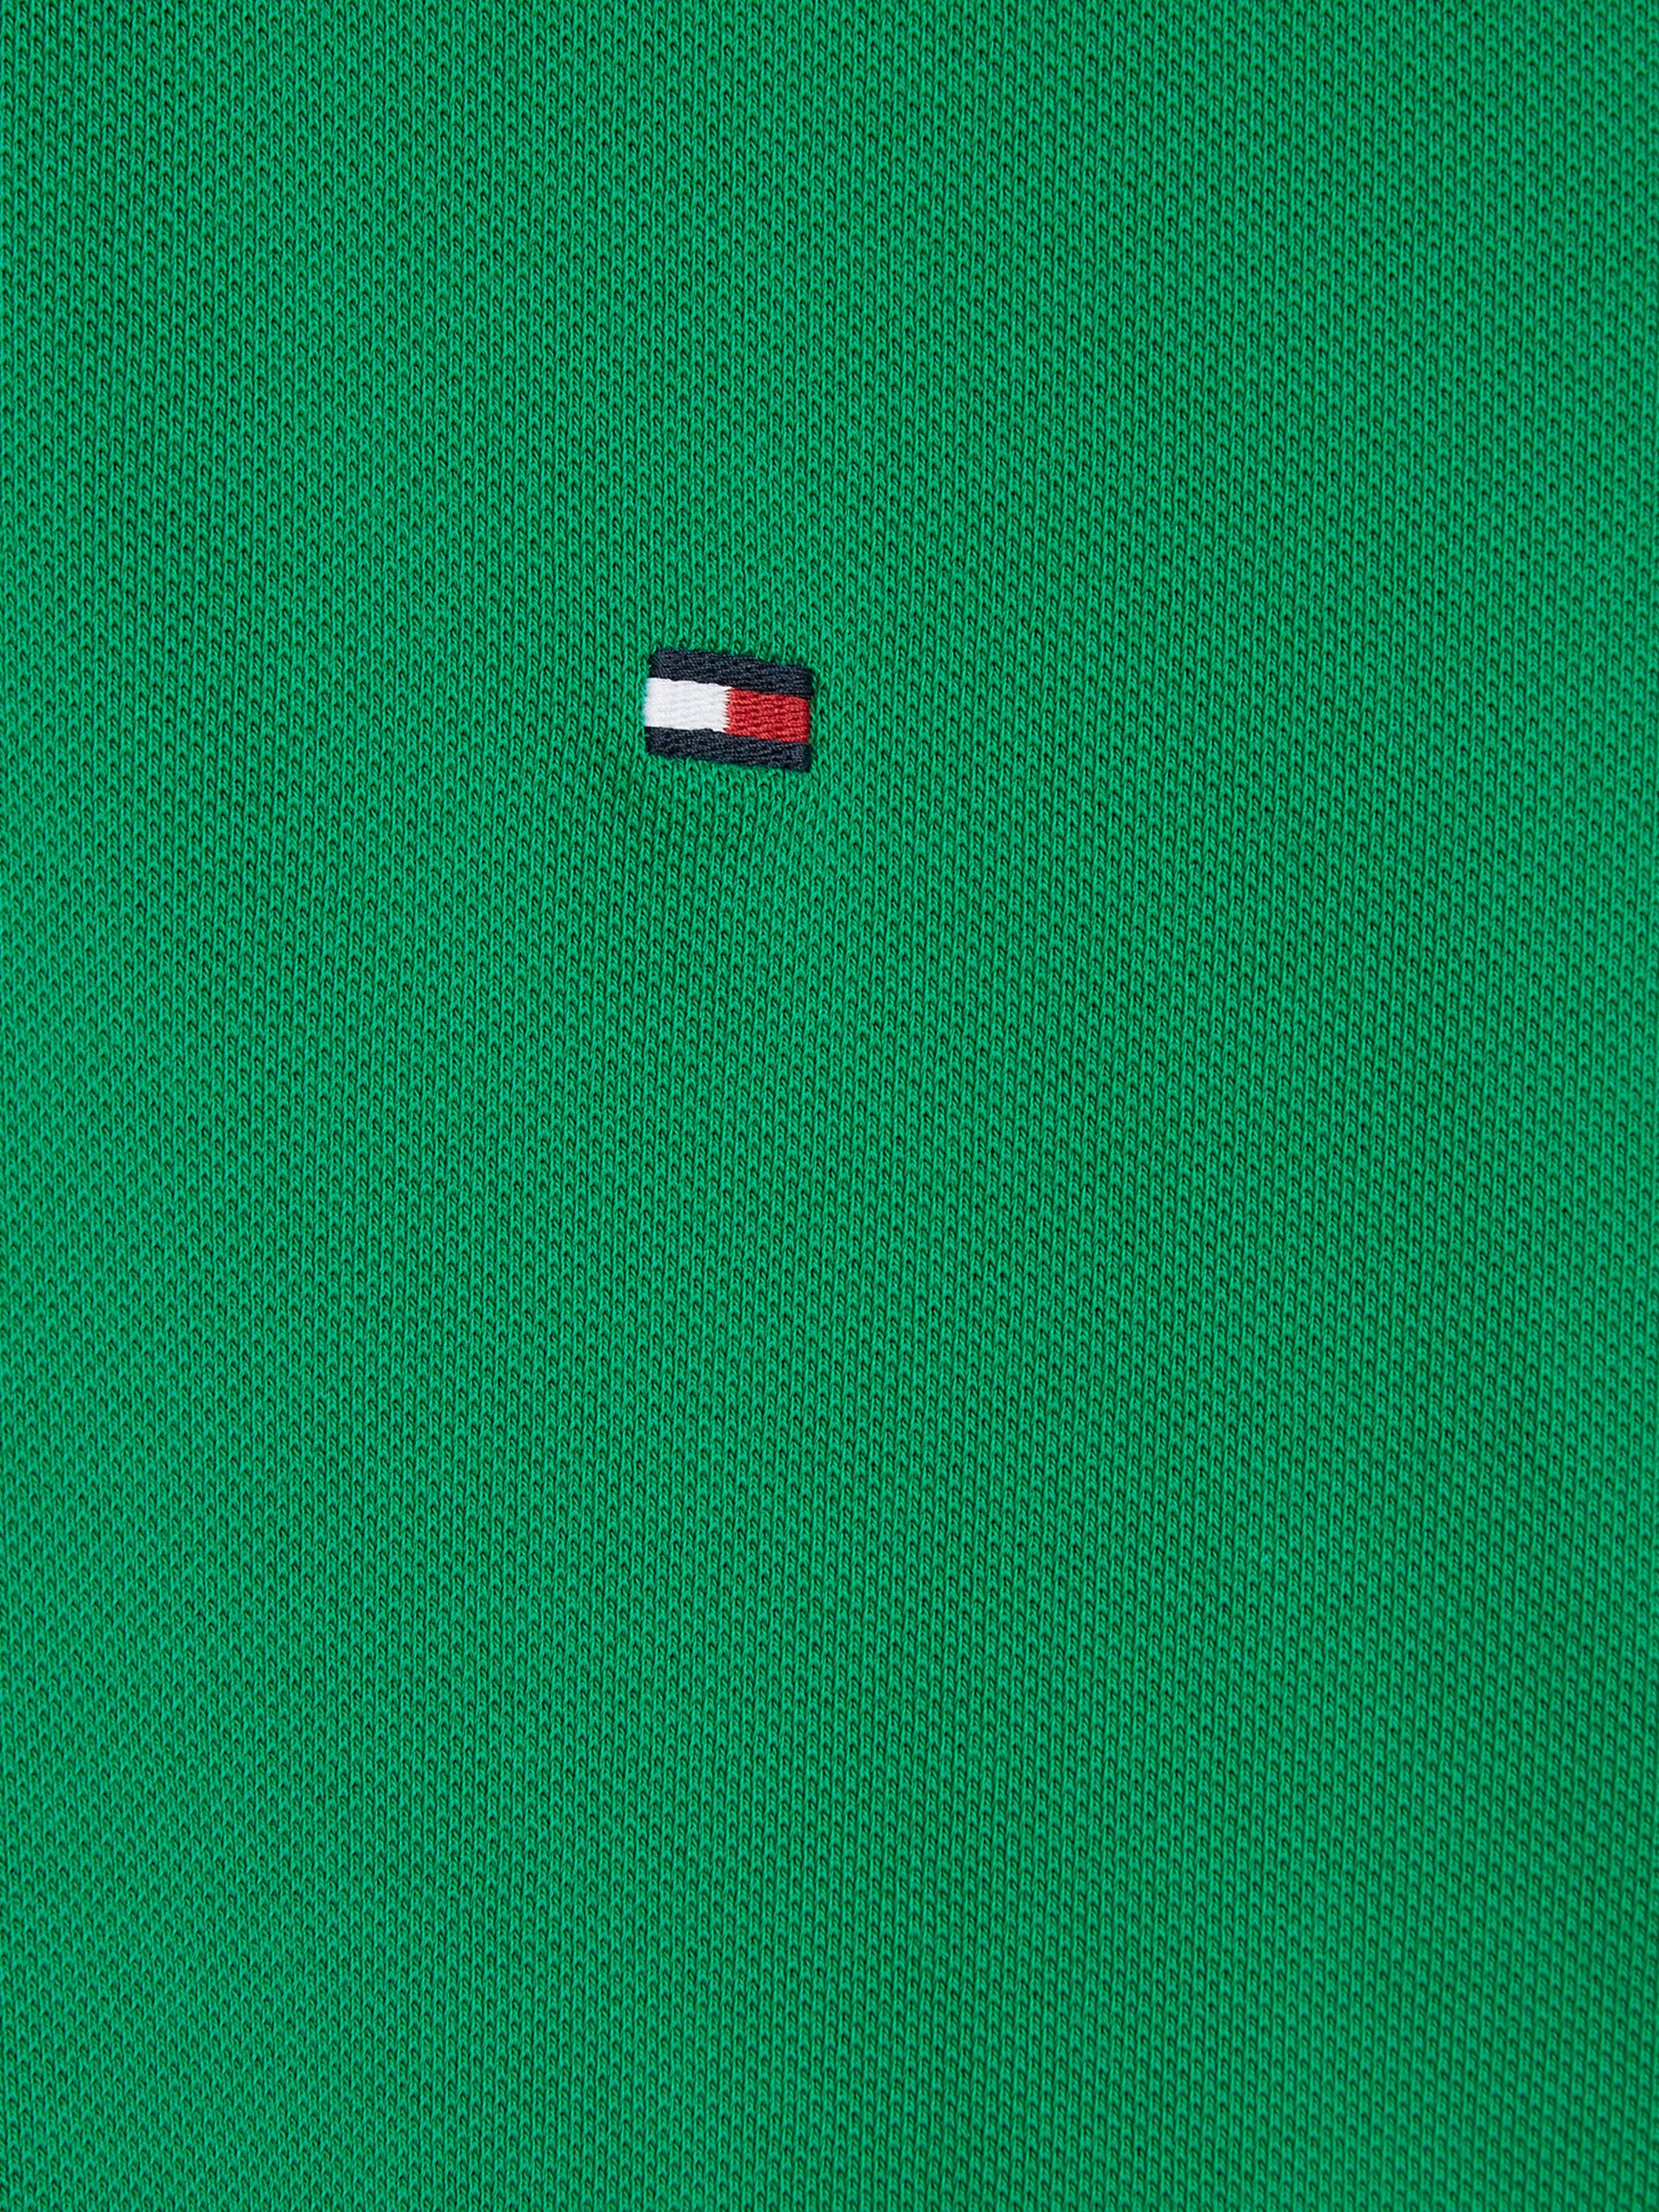 Tommy Hilfiger Poloshirt 1985 am POLO Kragen innen Tommy Hilfiger mit Kontraststreifen Green Olympic REGULAR